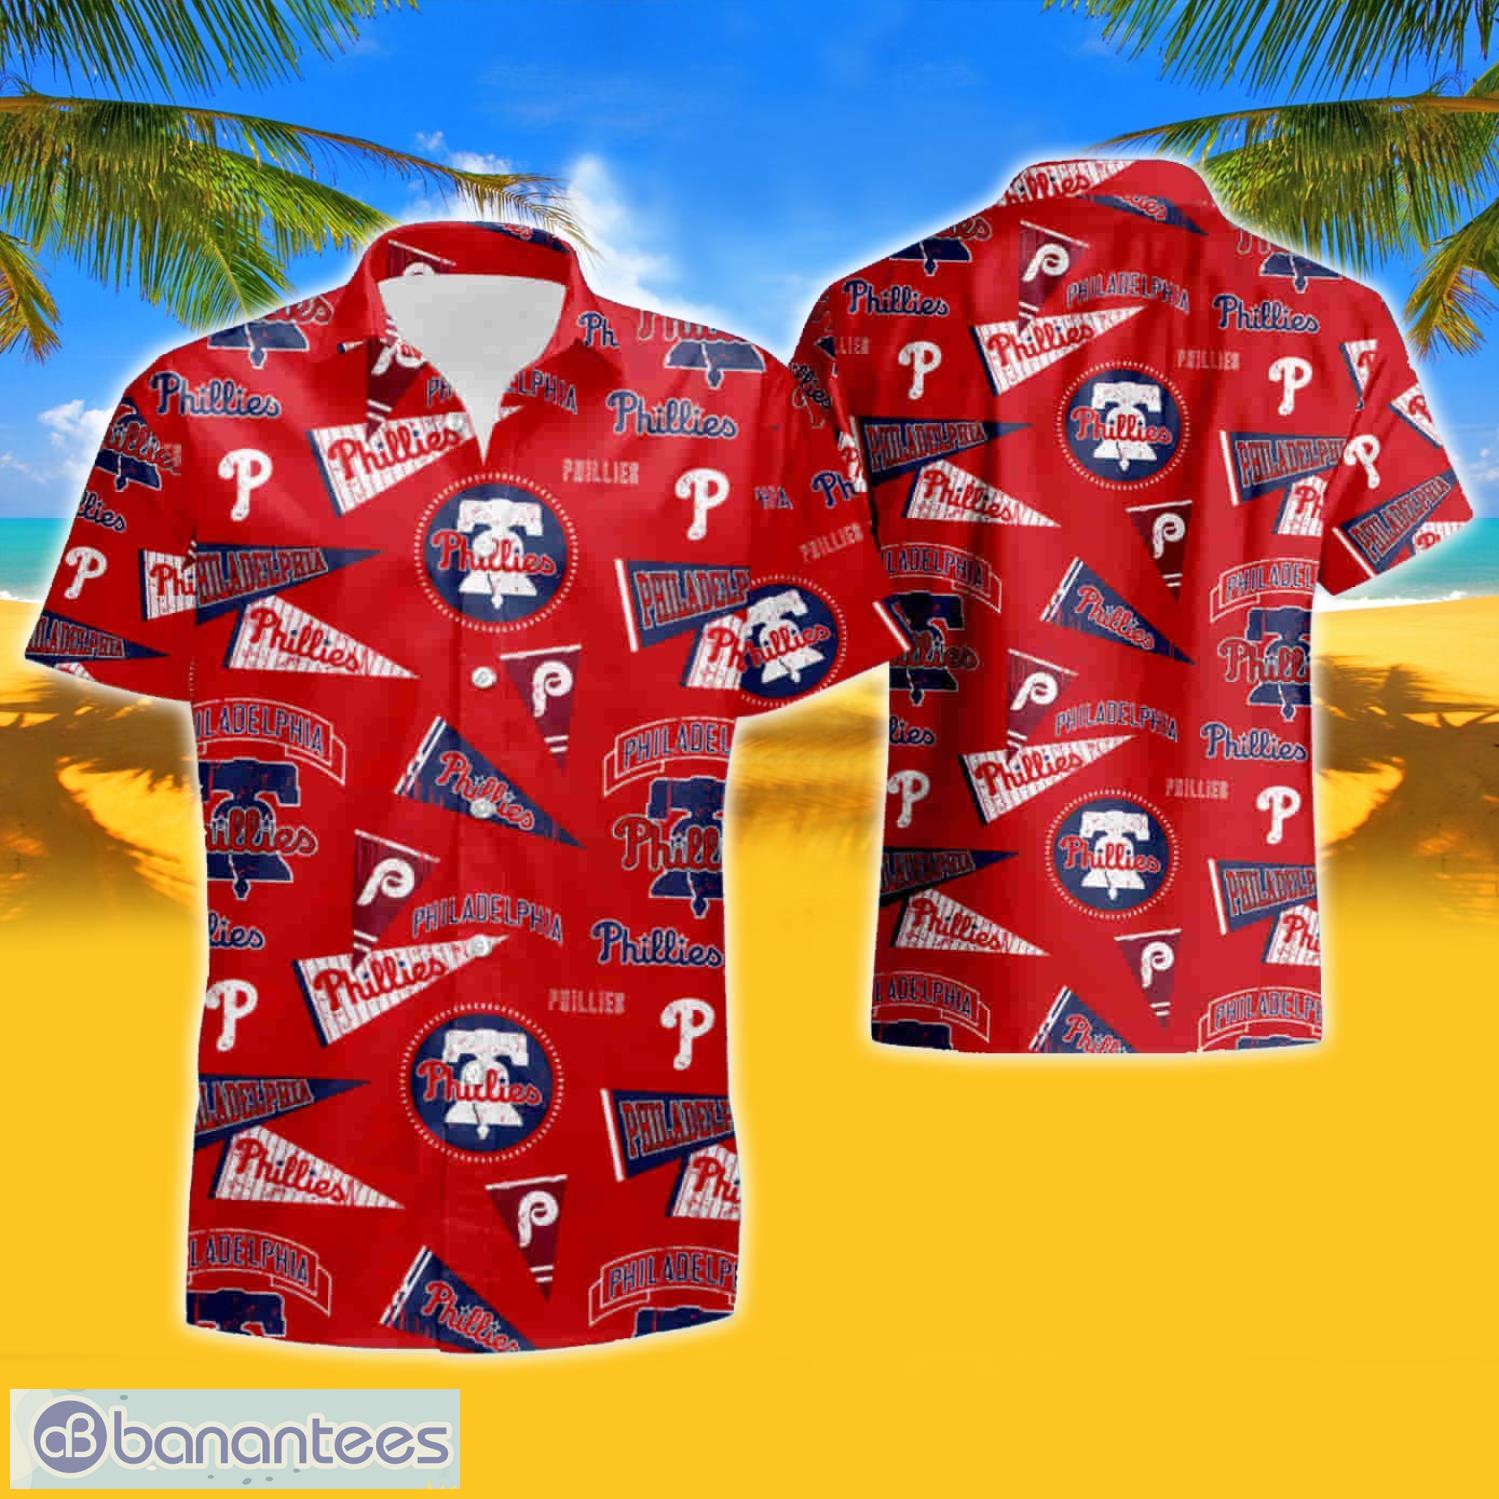 MLB Philadelphia Phillies Hawaiian Shirt And Shorts Summer Vacation Gift -  Banantees